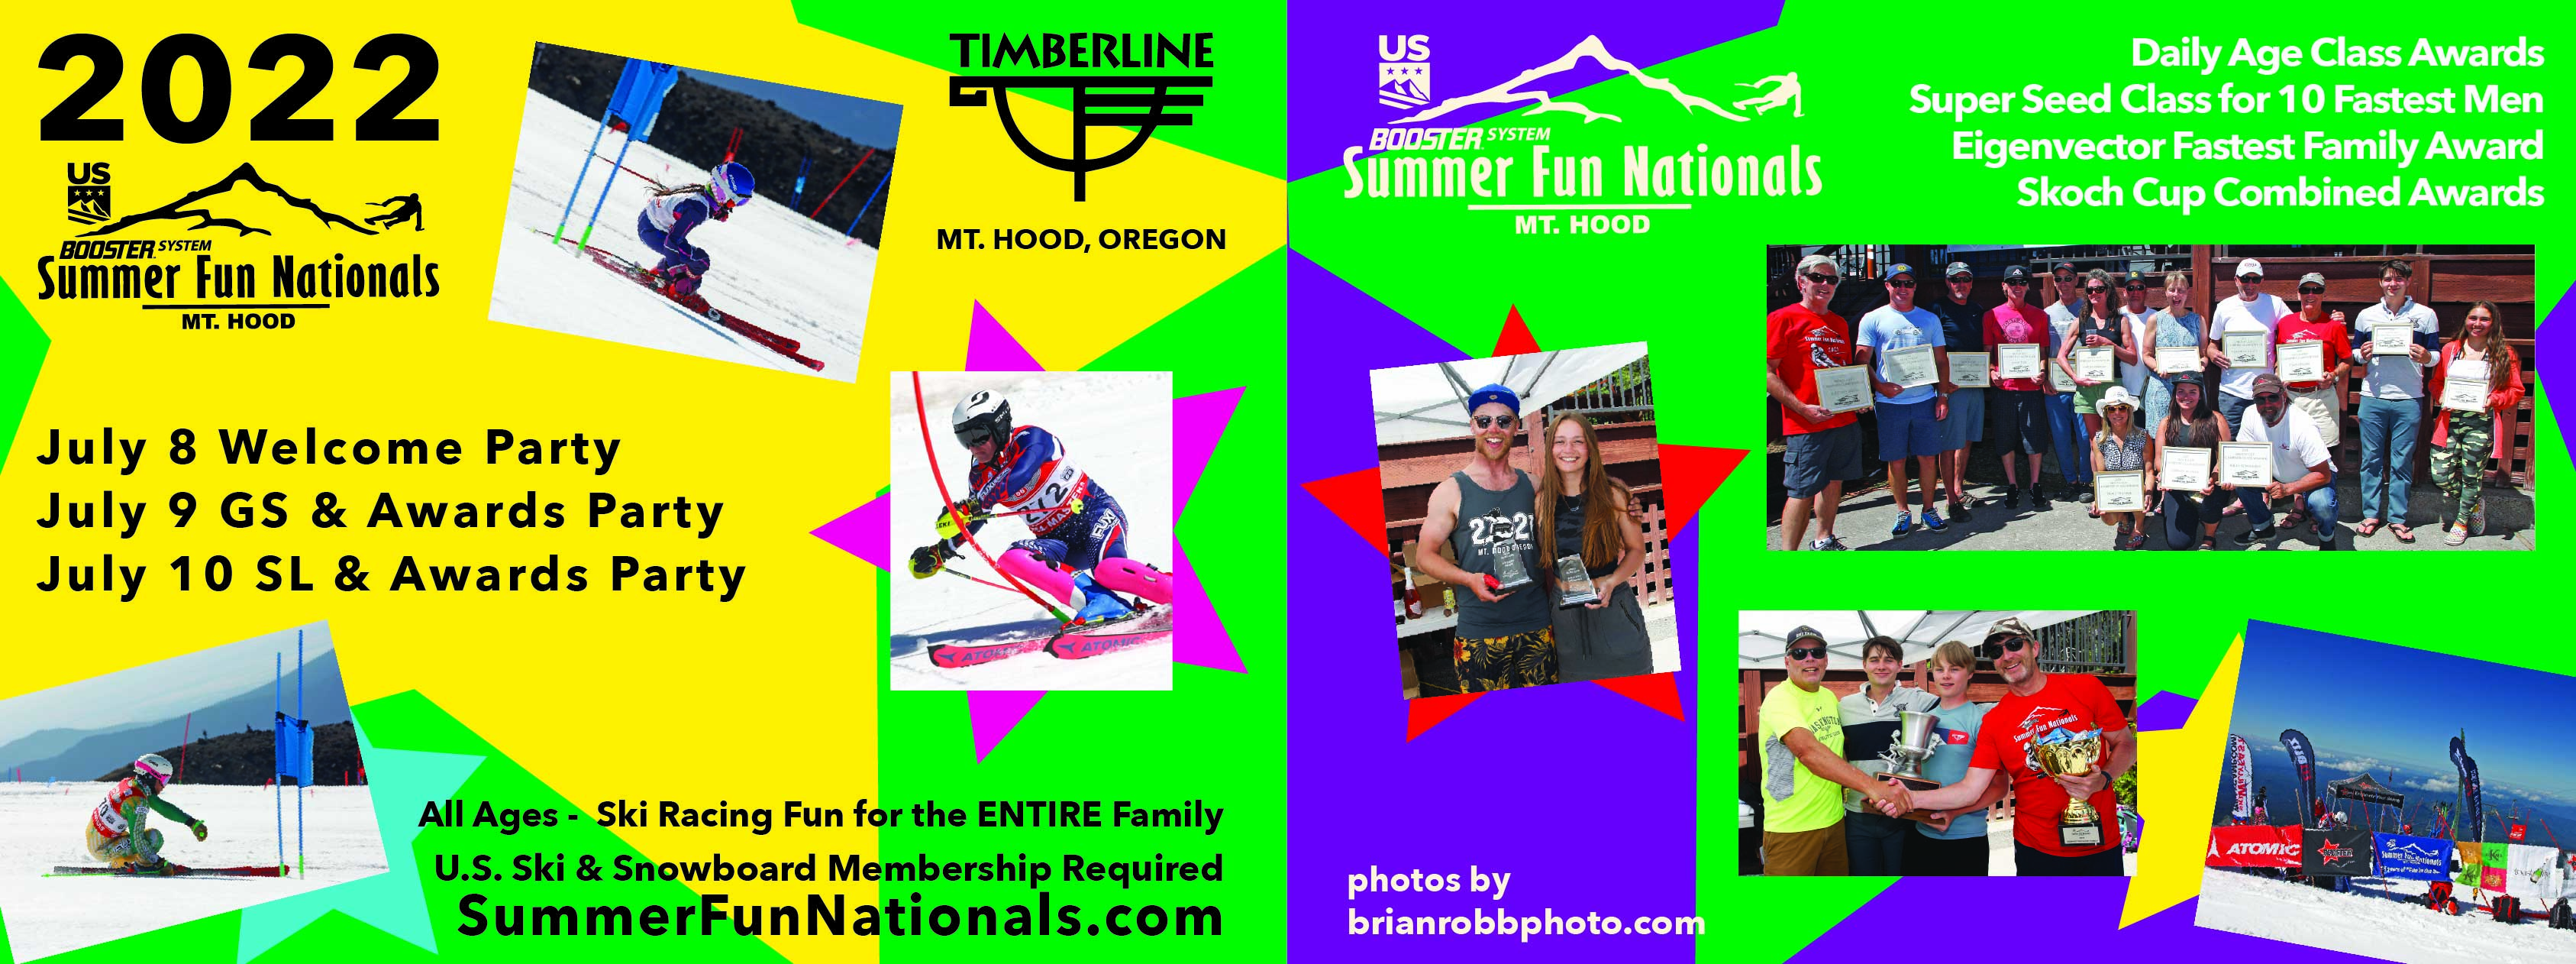 2022 Summer Fun Nationals Postcard